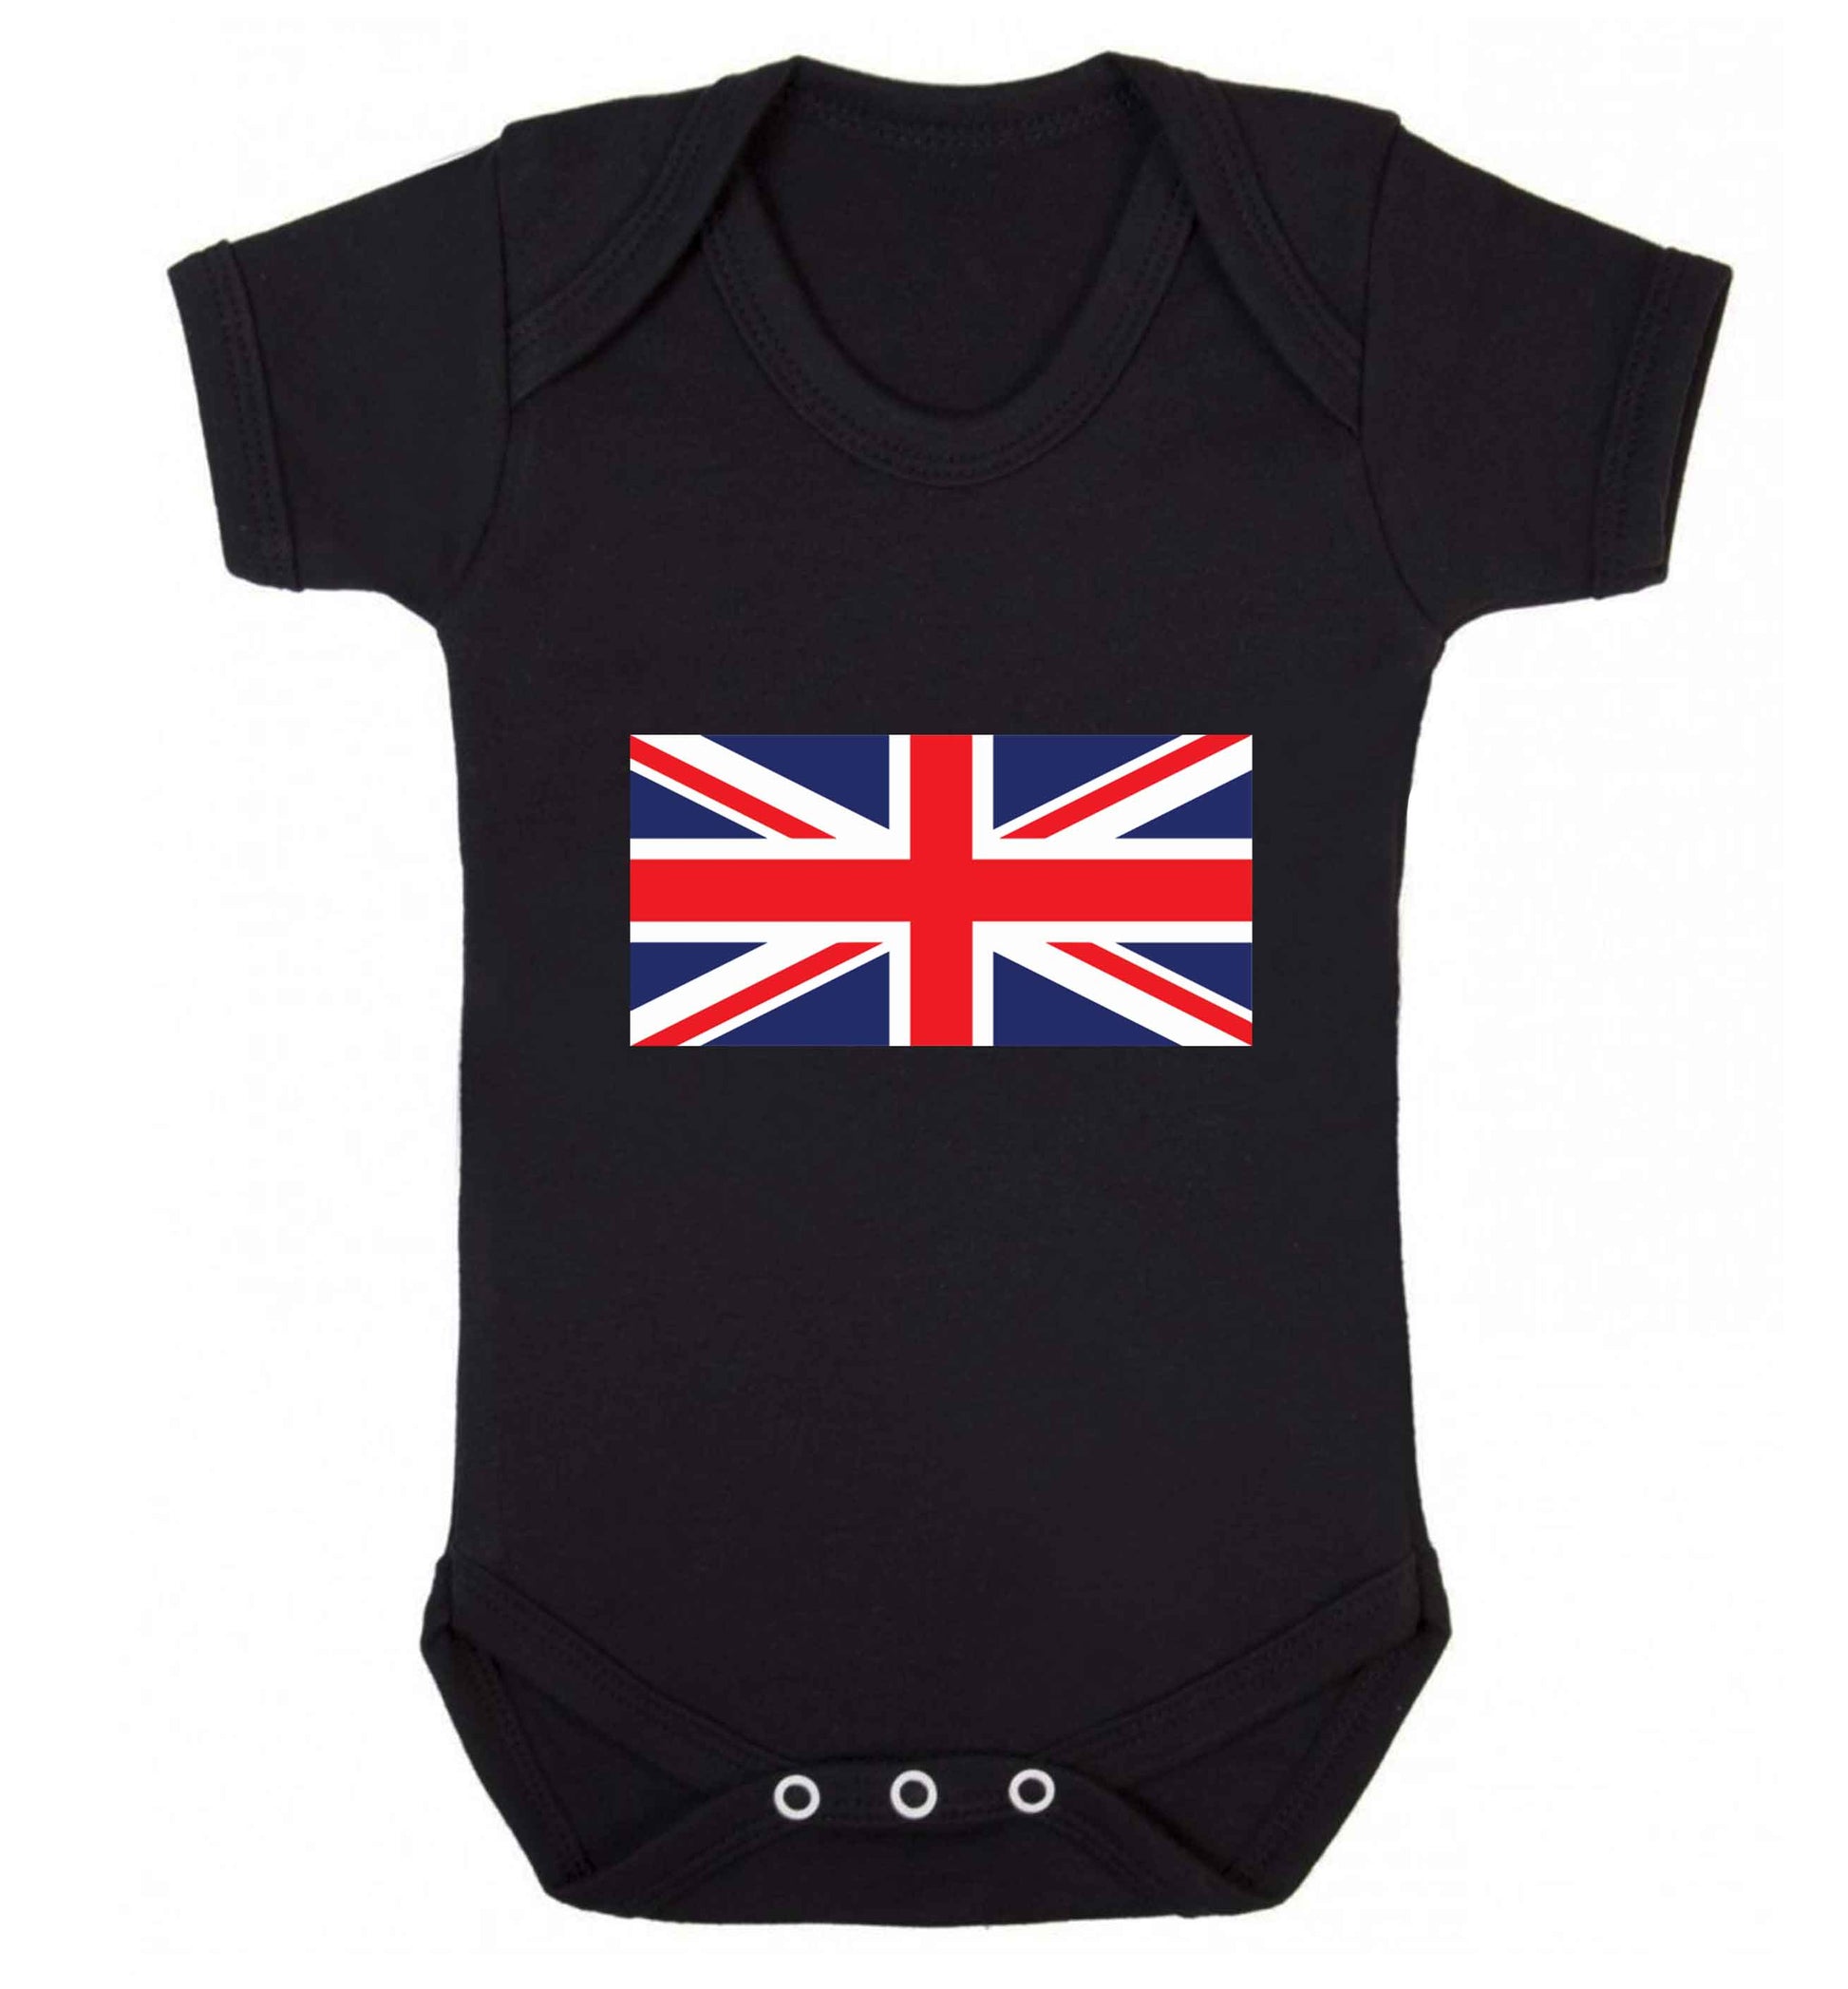 Union Jack baby vest black 18-24 months